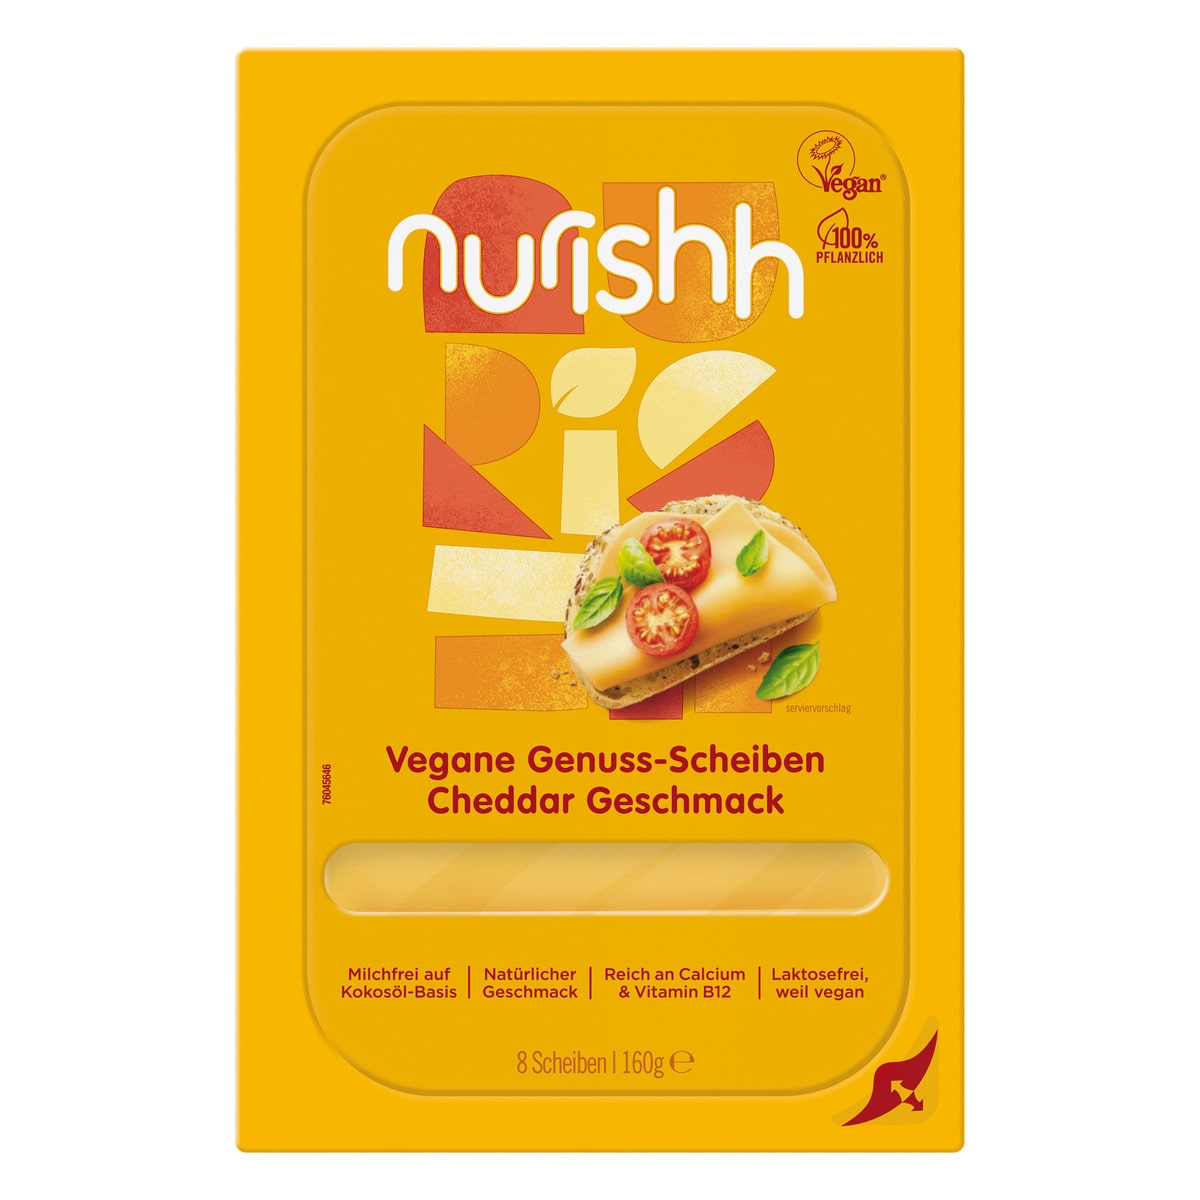 Nurishh vegane Genuss-Scheiben Cheddar Geschmack frisch 160g